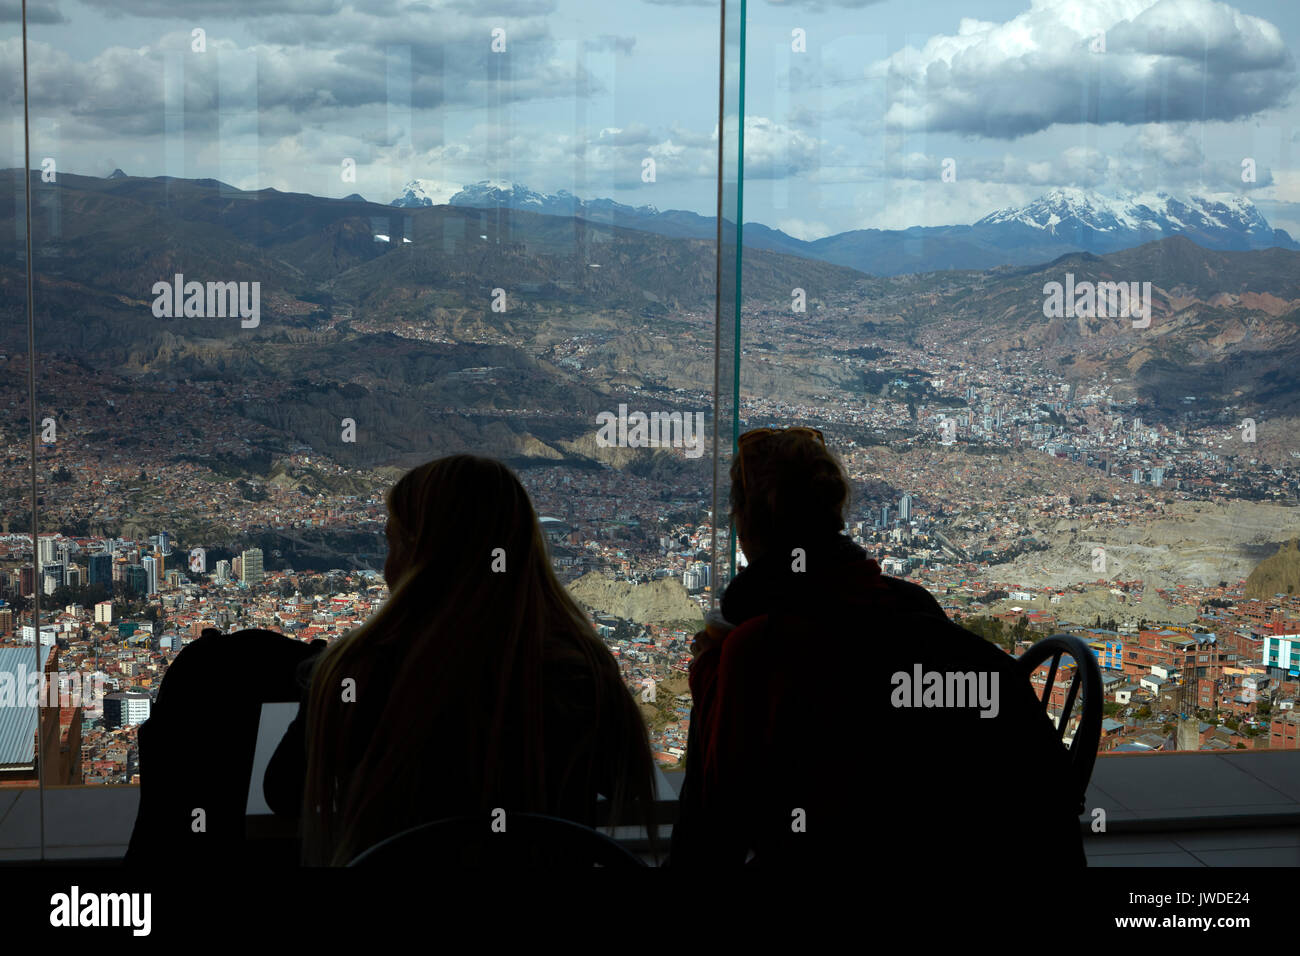 Tourists & view of La Paz and Illimani (6438m/21,122ft), from top of teleferico at Estacion Teleferico Parque Mirador, La Paz, Bolivia, South America Stock Photo